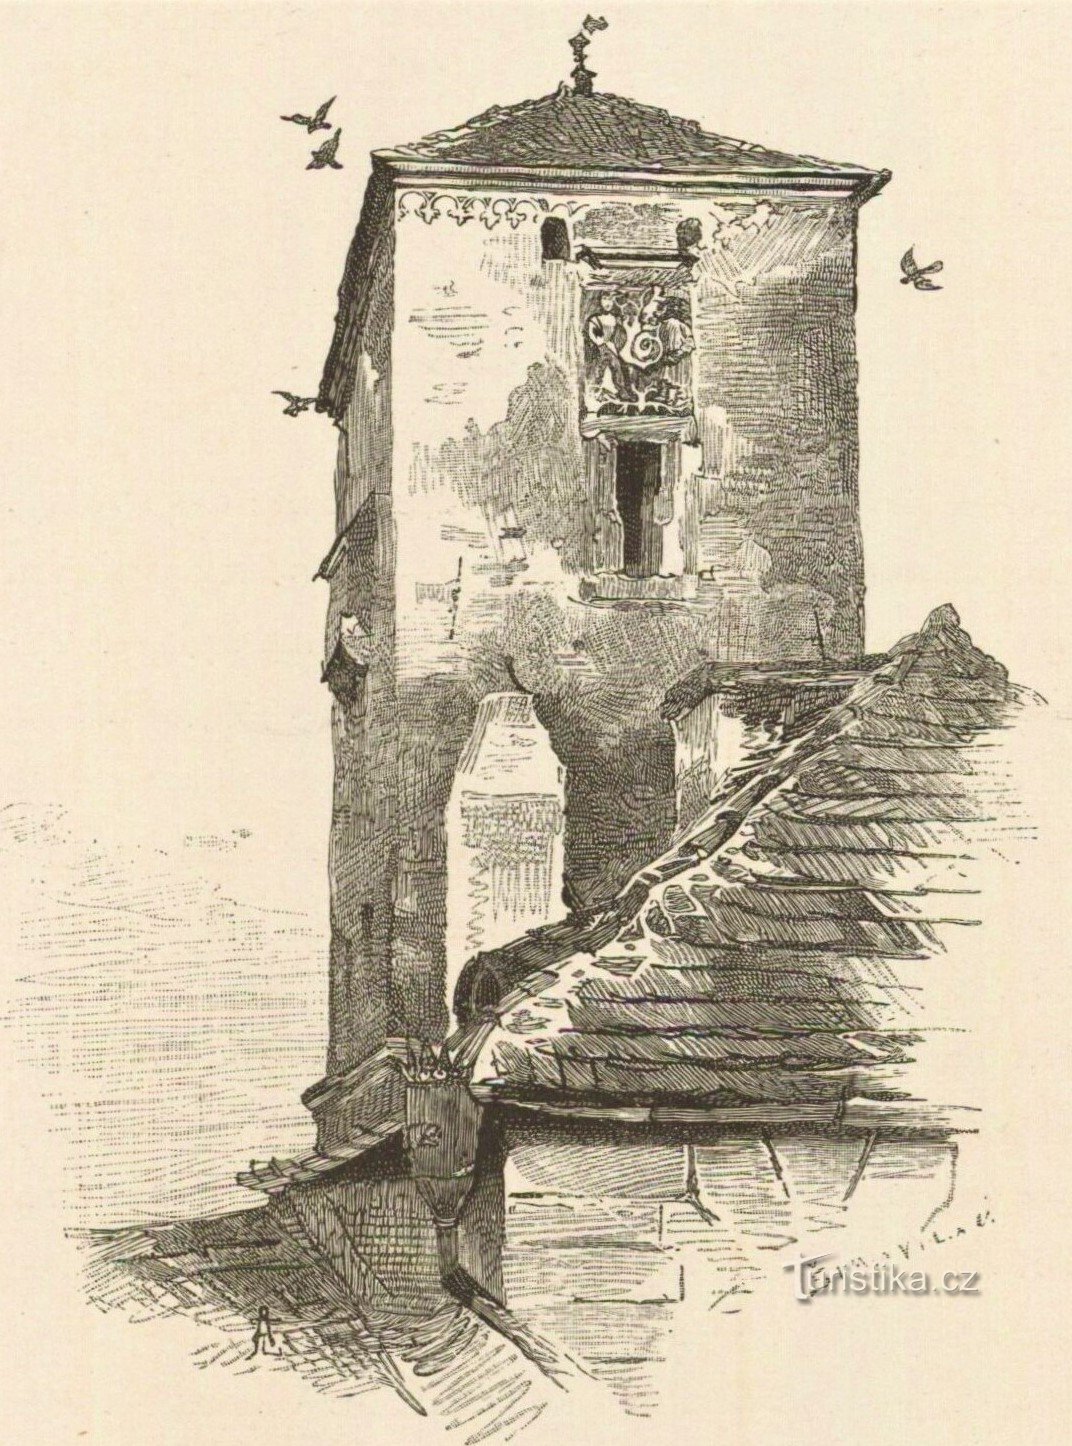 La tour Kropáčka sur un dessin de la fin du XIXe siècle